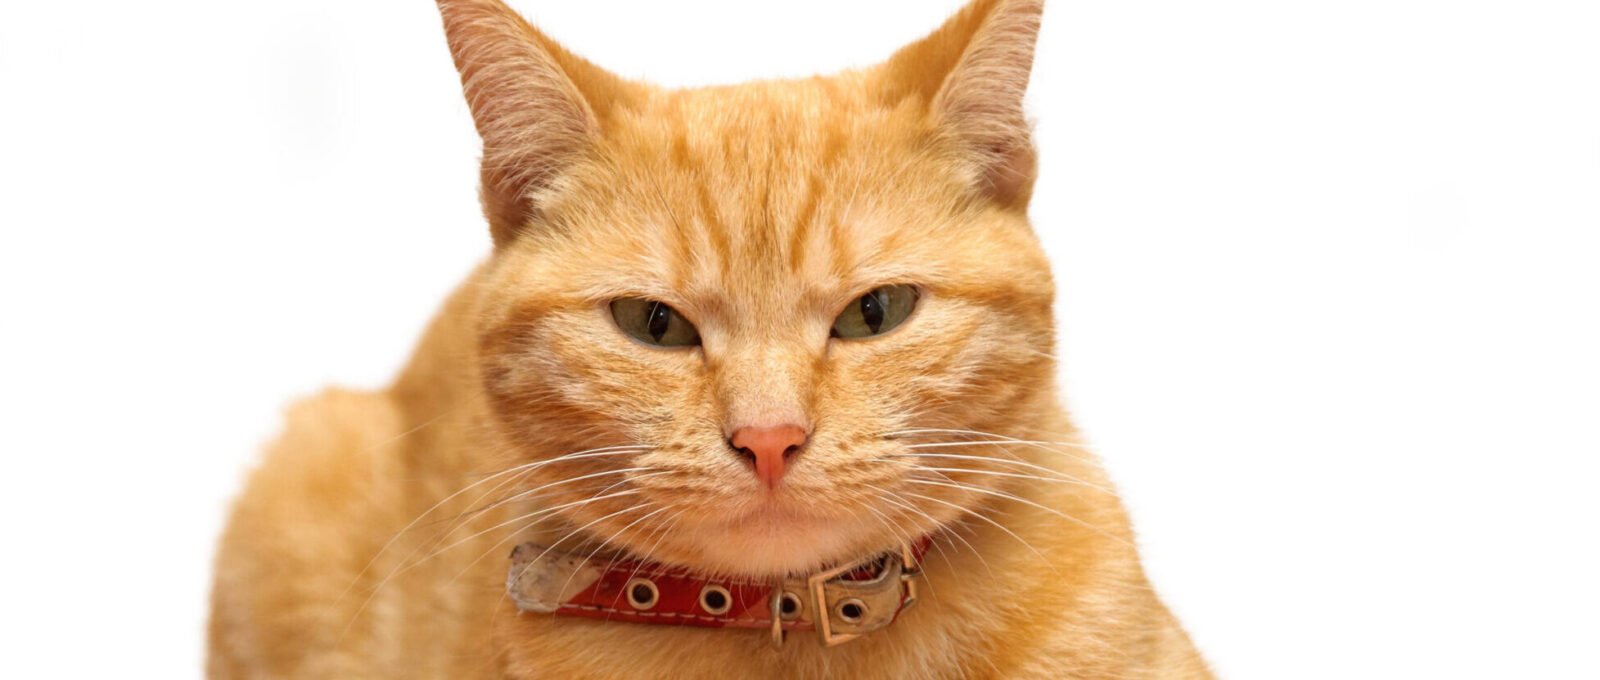 ginger/ marmalade cat looking at camera